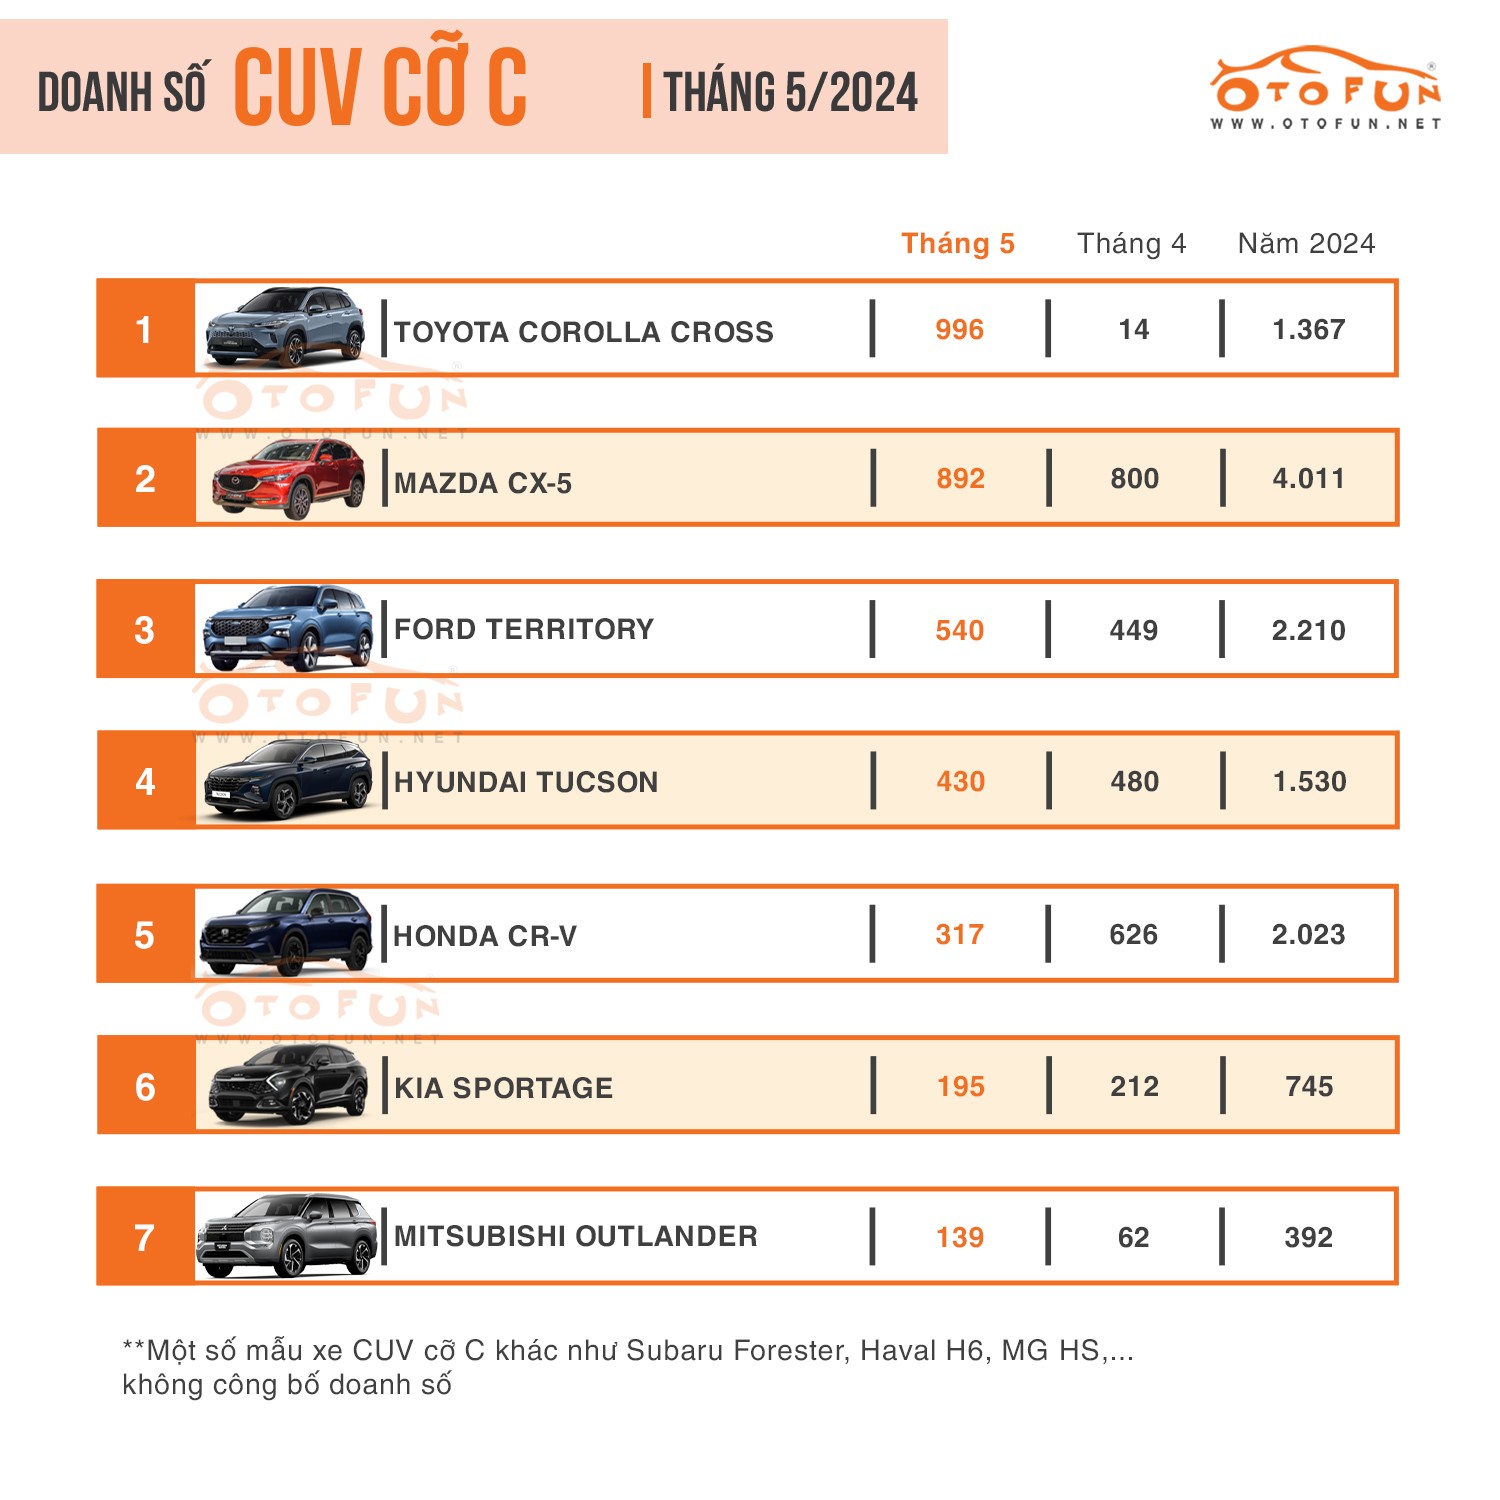 Ra mắt phiên bản mới, doanh số Toyota Corolla Cross bán gấp 3 lần Honda CR-V